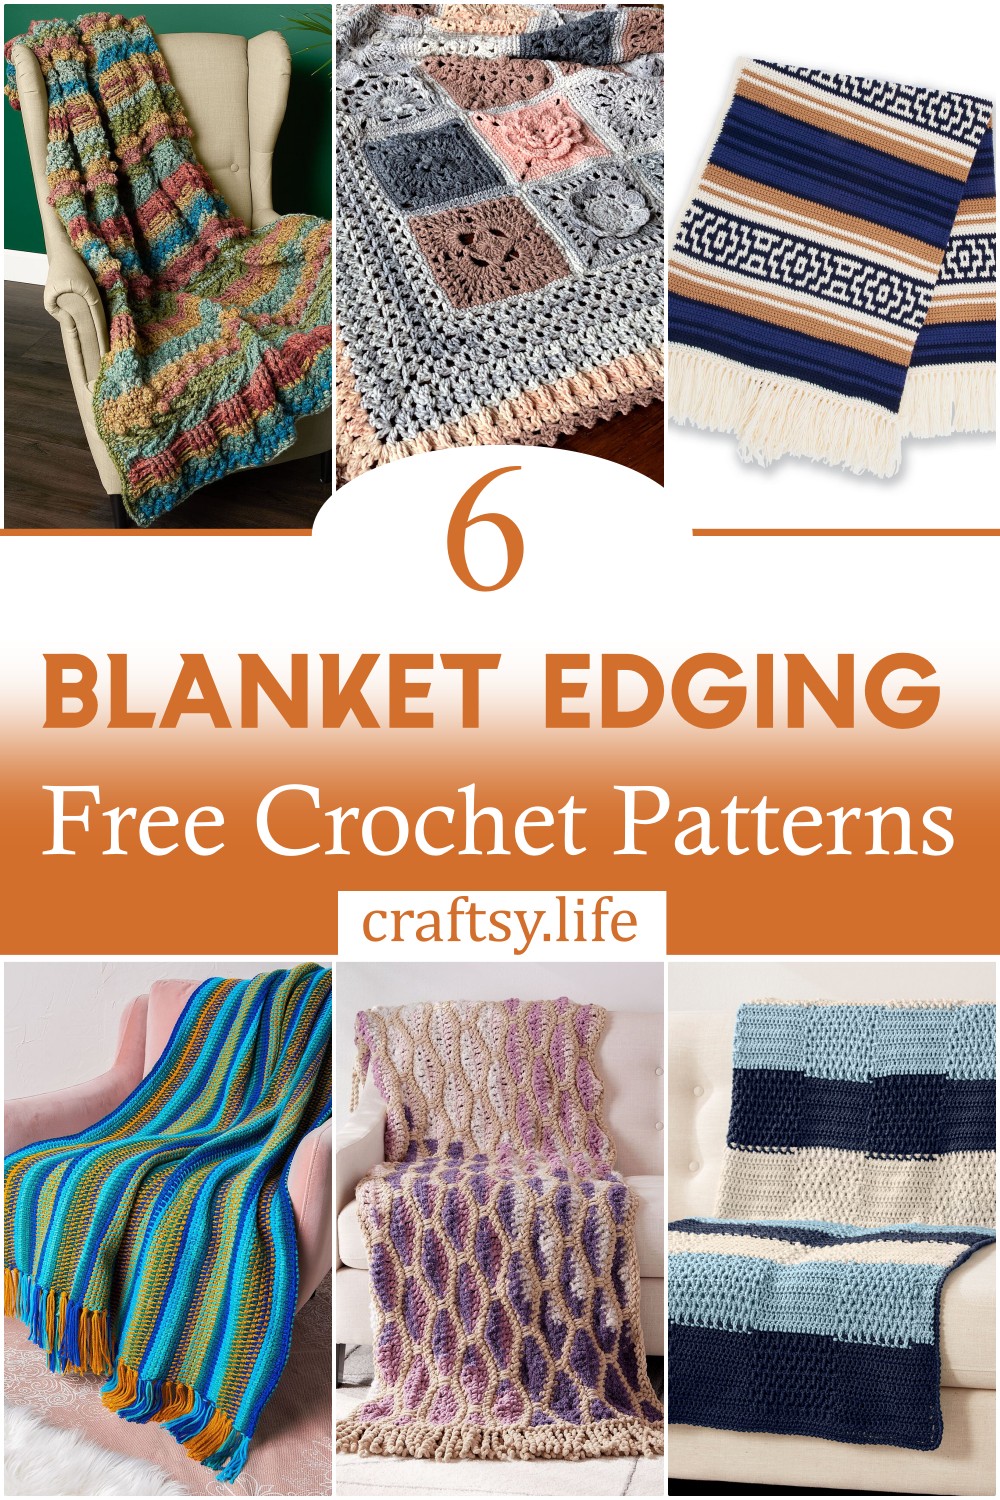 Blanket Edging Crochet Patterns 1